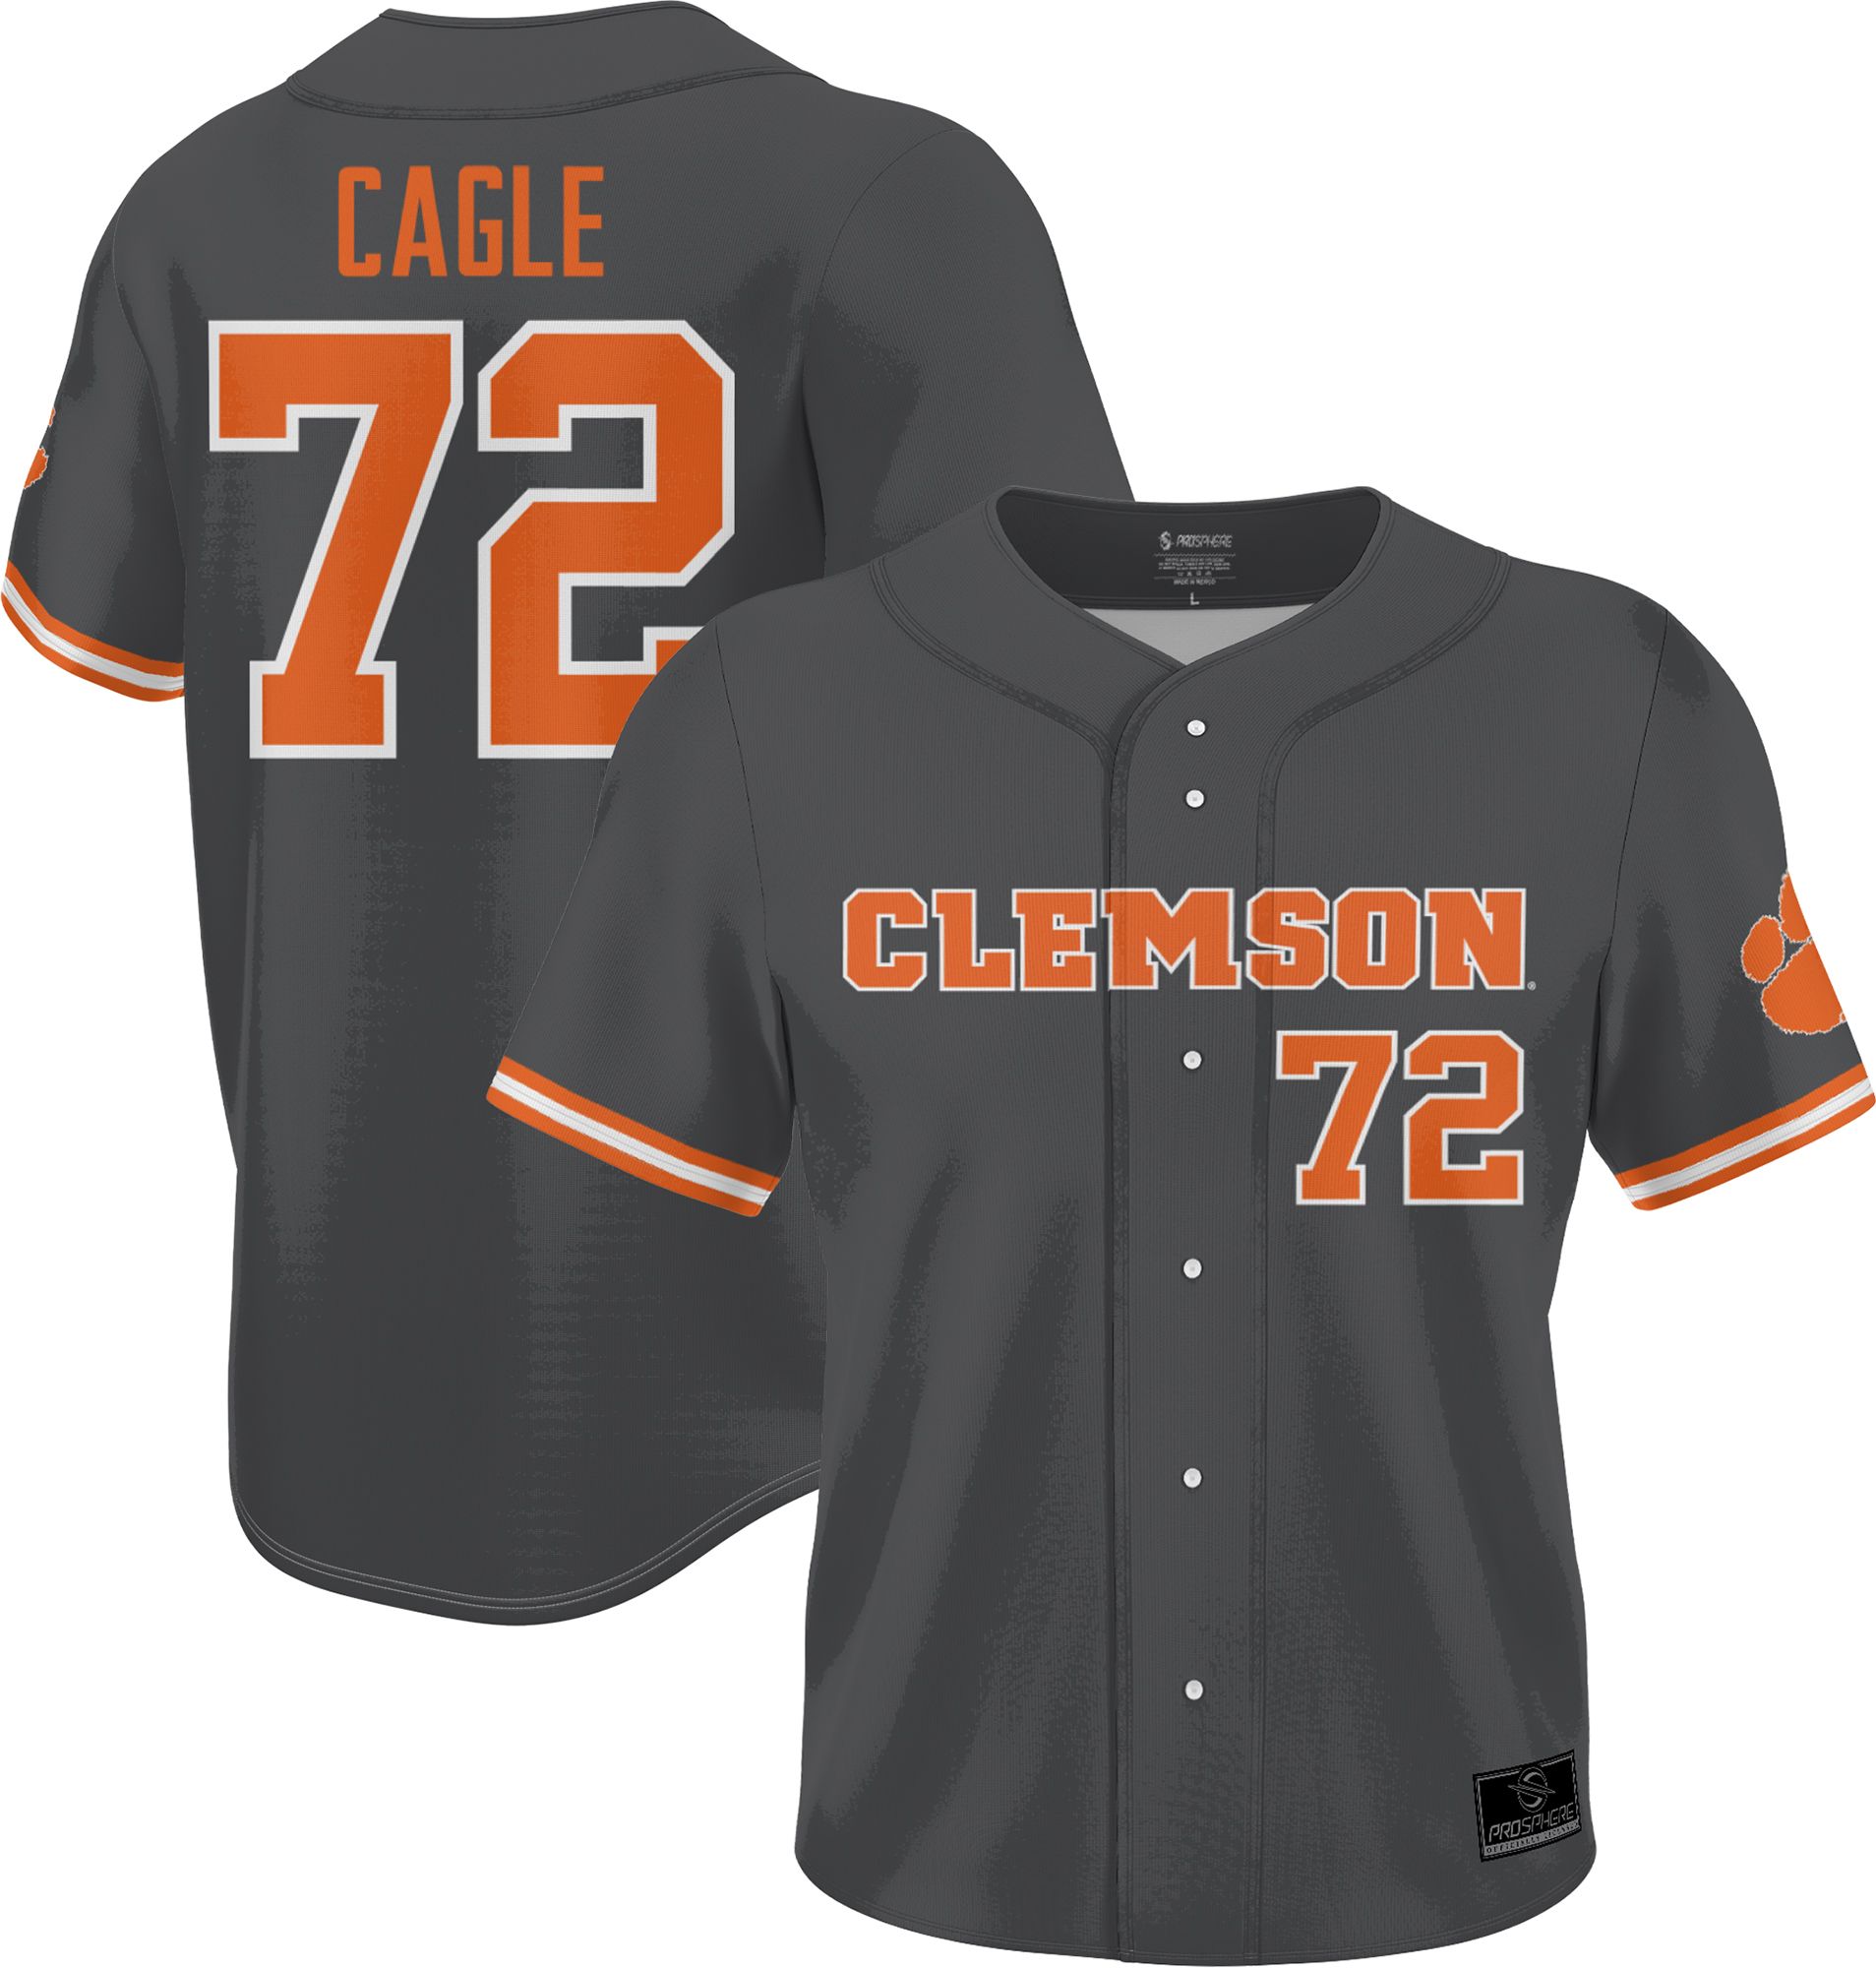 Clemson Tigers baseball jersey